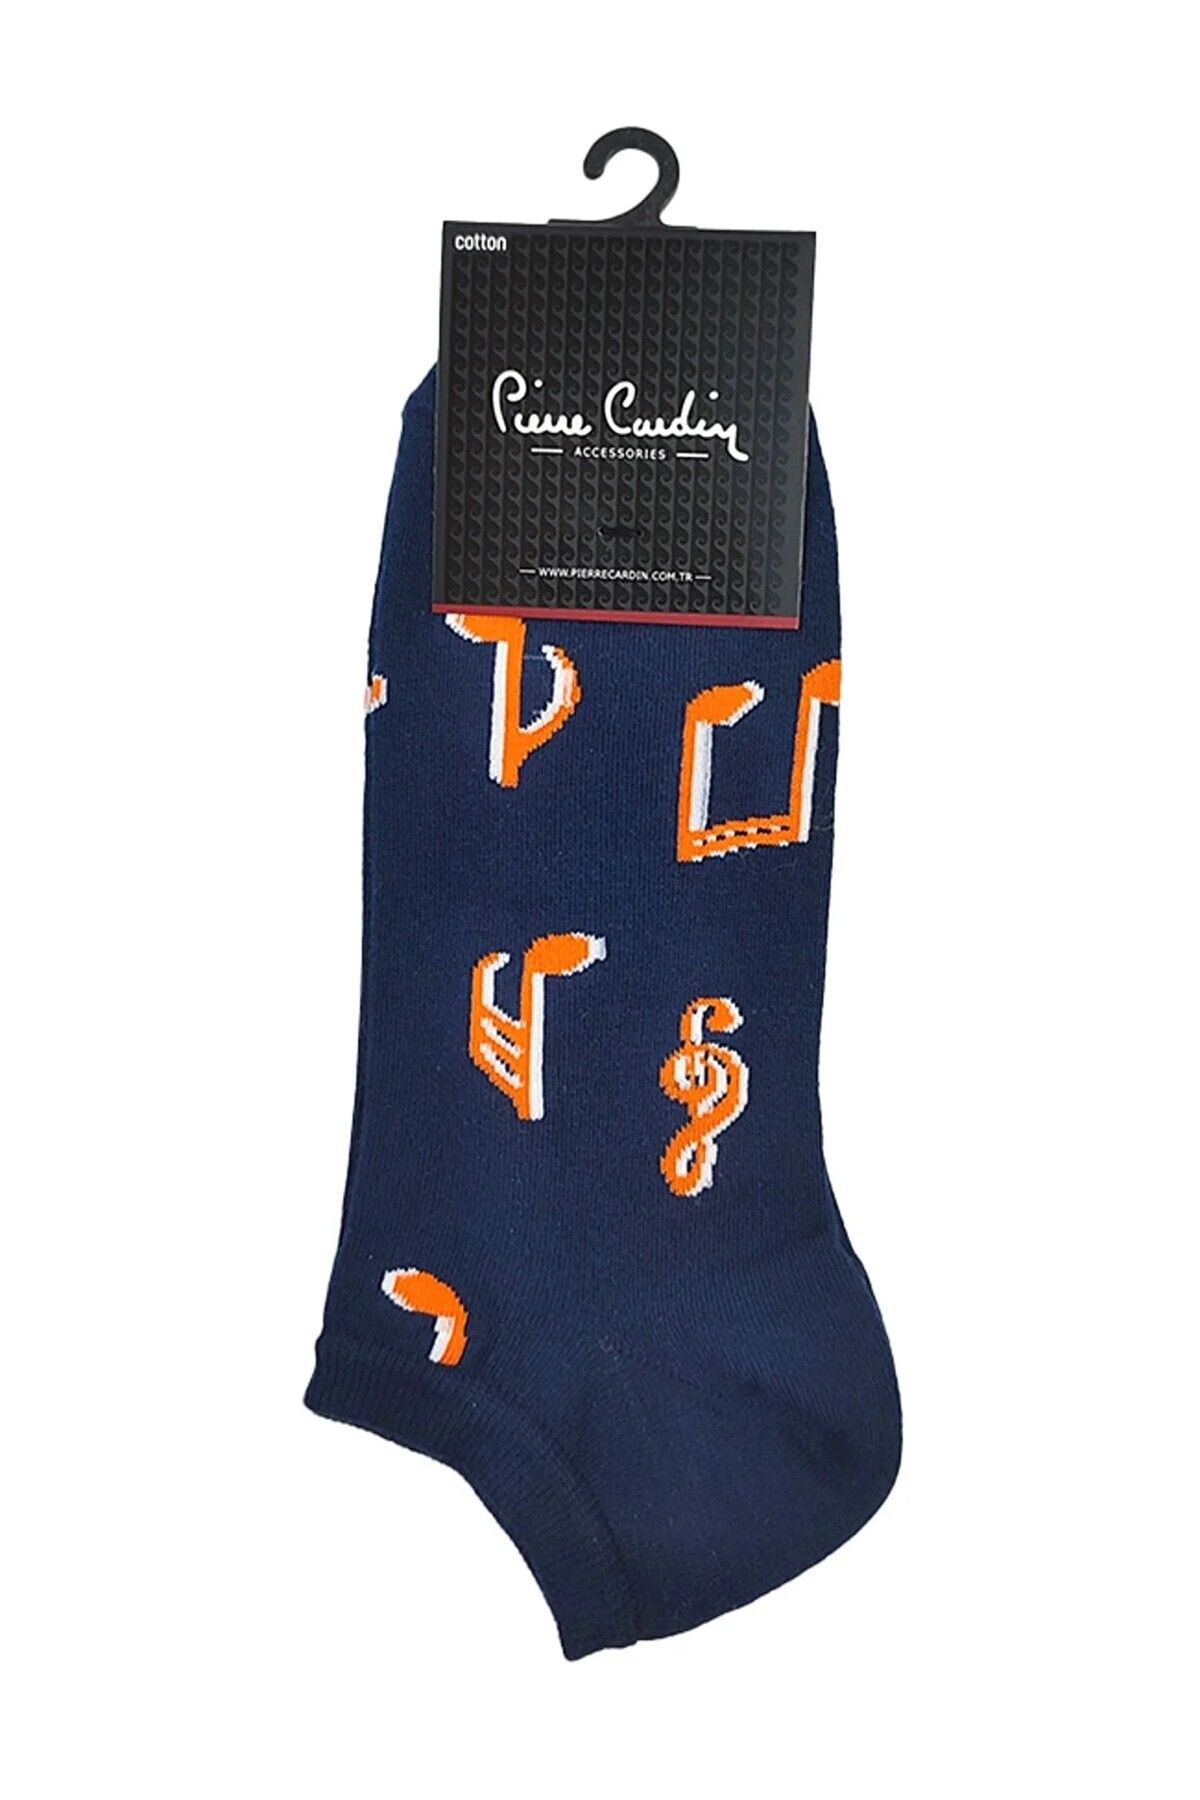 Pierre Cardin Erkek 3'lü Desenli Pamuk Patik Çorap